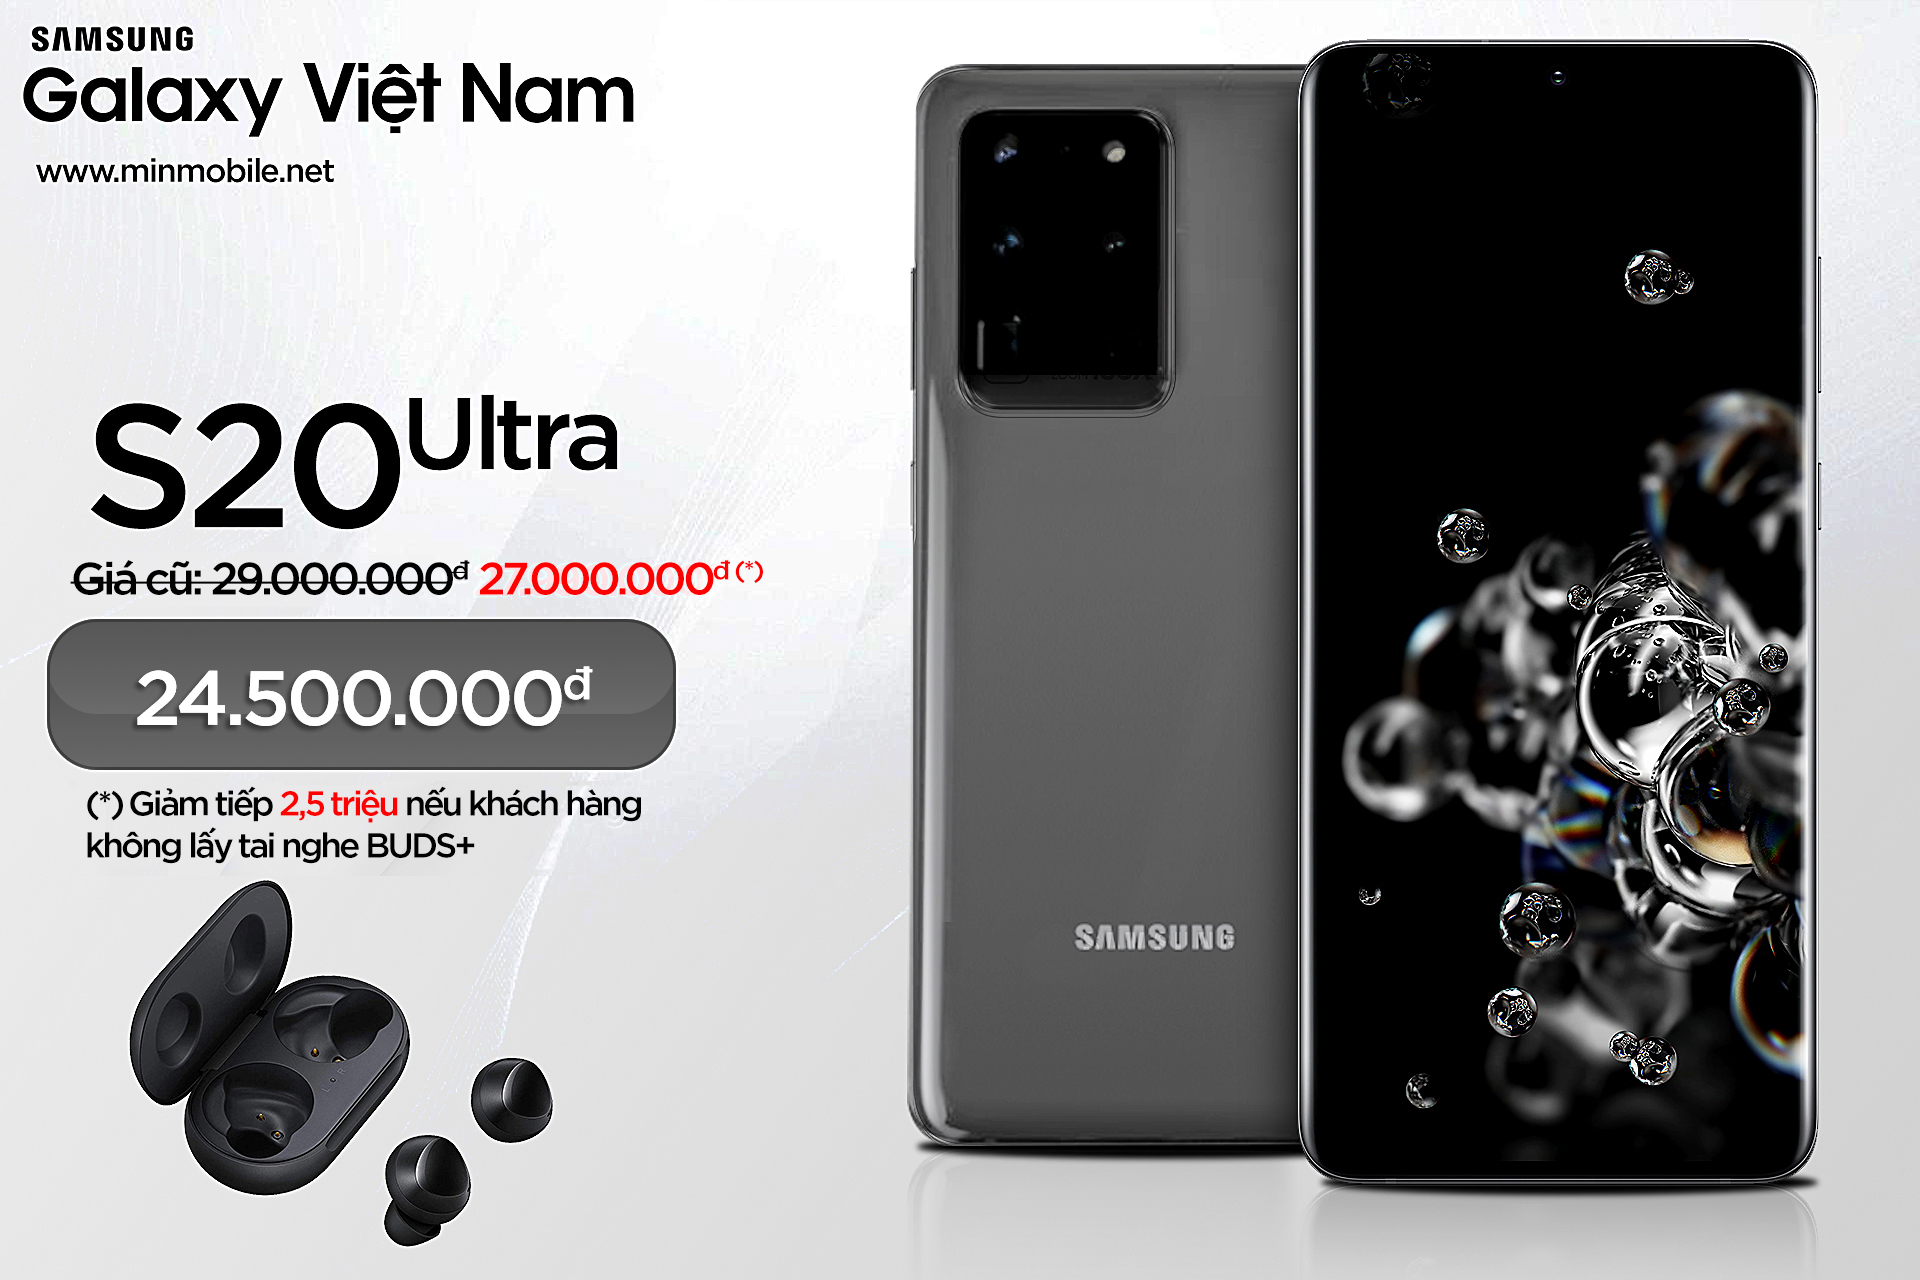 Samsung Galaxy S20 Ultra Việt Nam giá chỉ từ 24.500.000đ